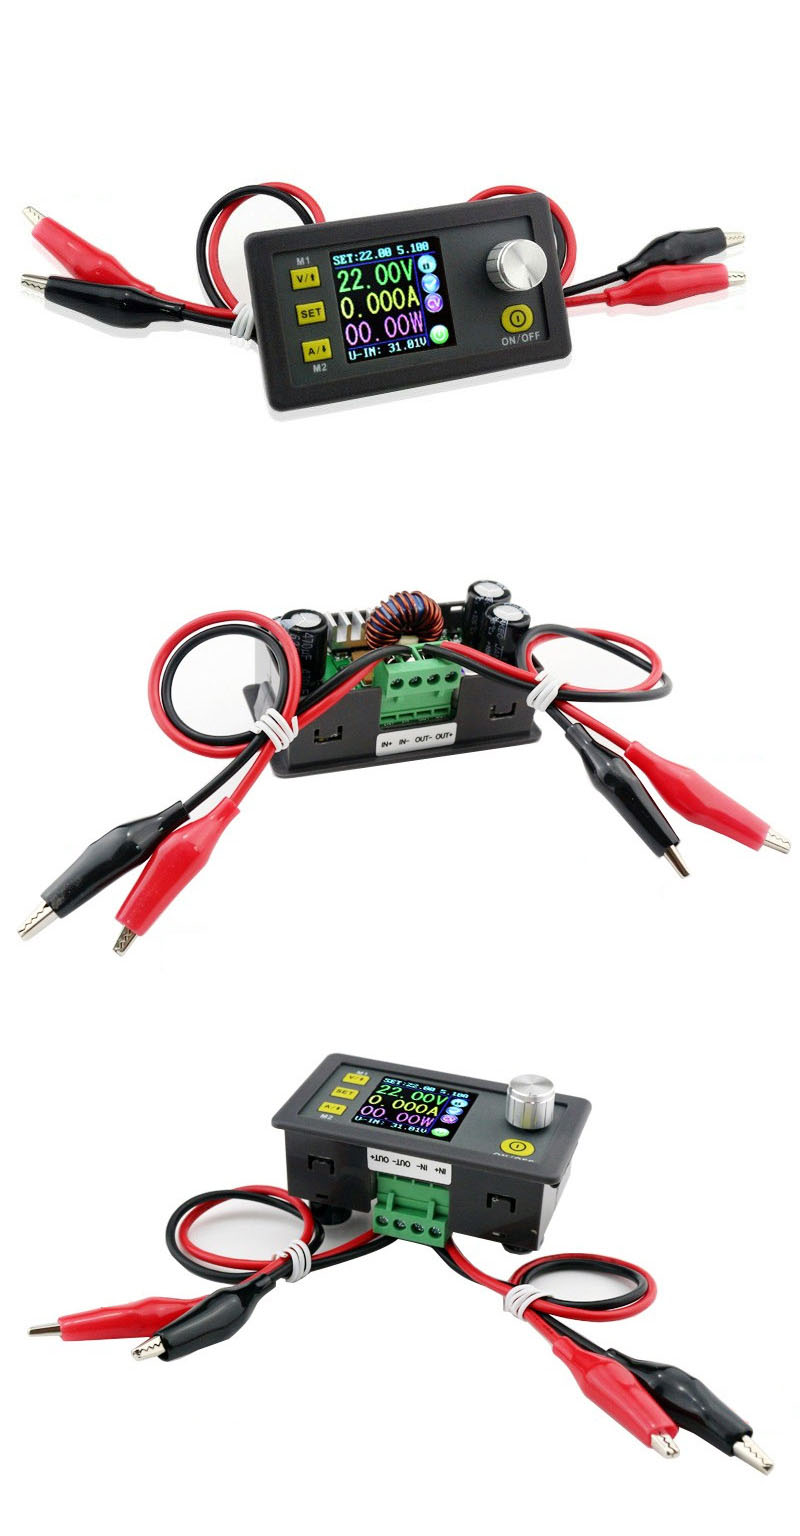 Digital-Control-Power-Supply-50V-5A-Adjustable-Constant-Voltage-Constant-Current-Tester-DC-Voltmeter-1593471